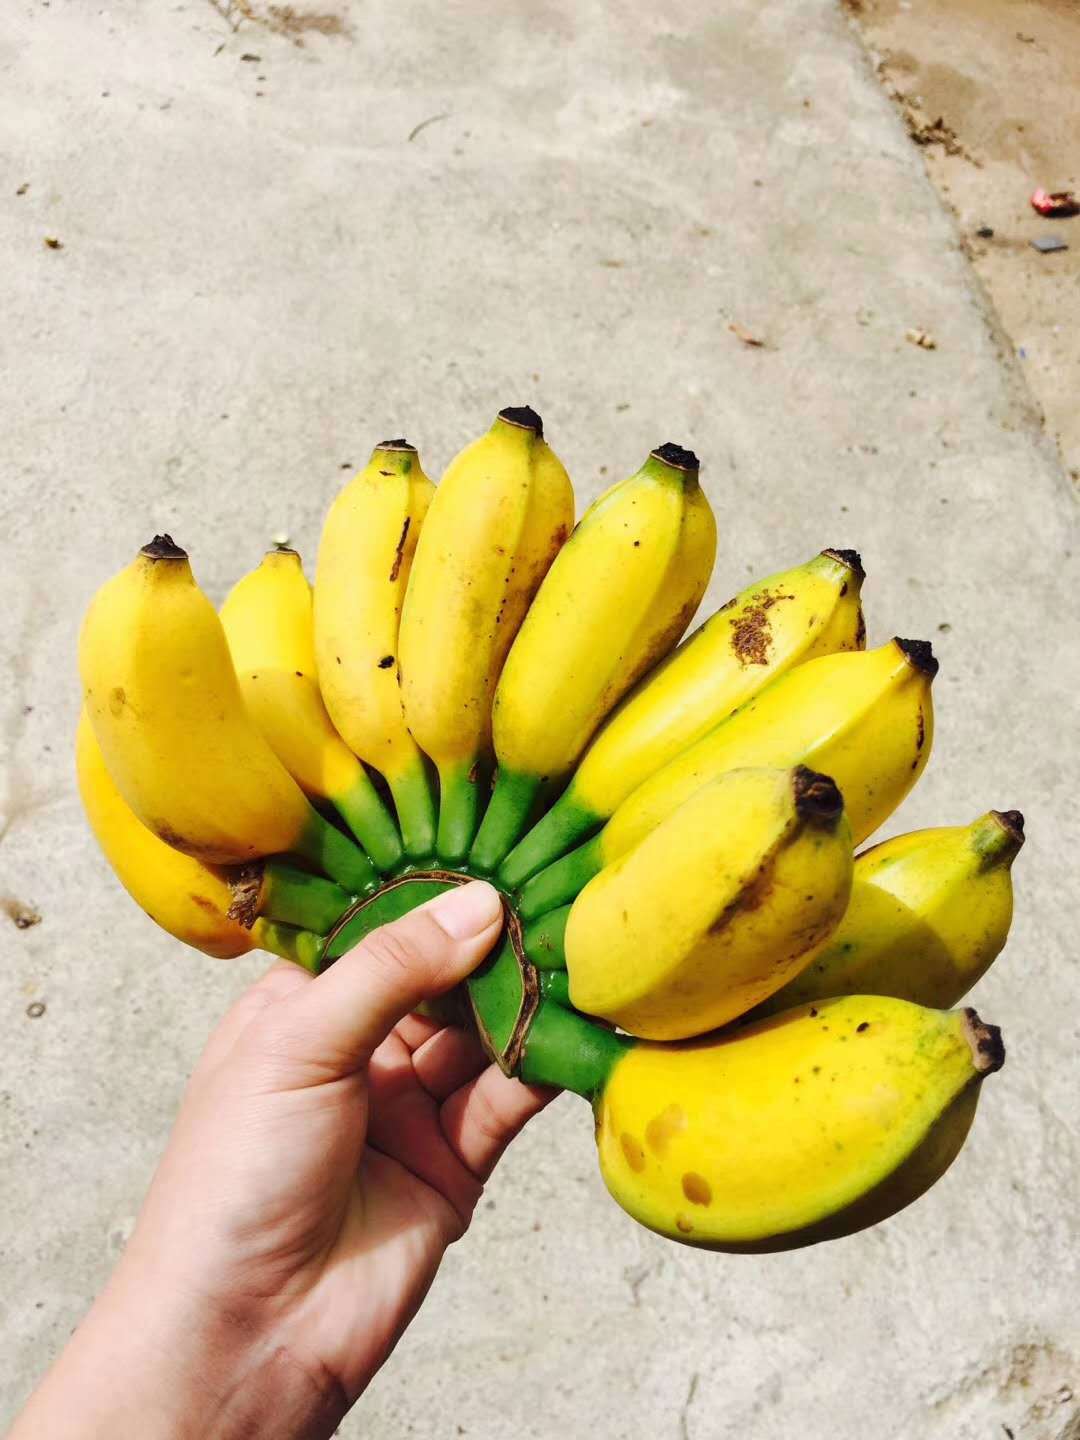 香蕉图片_的香蕉图片大全 - 花卉网